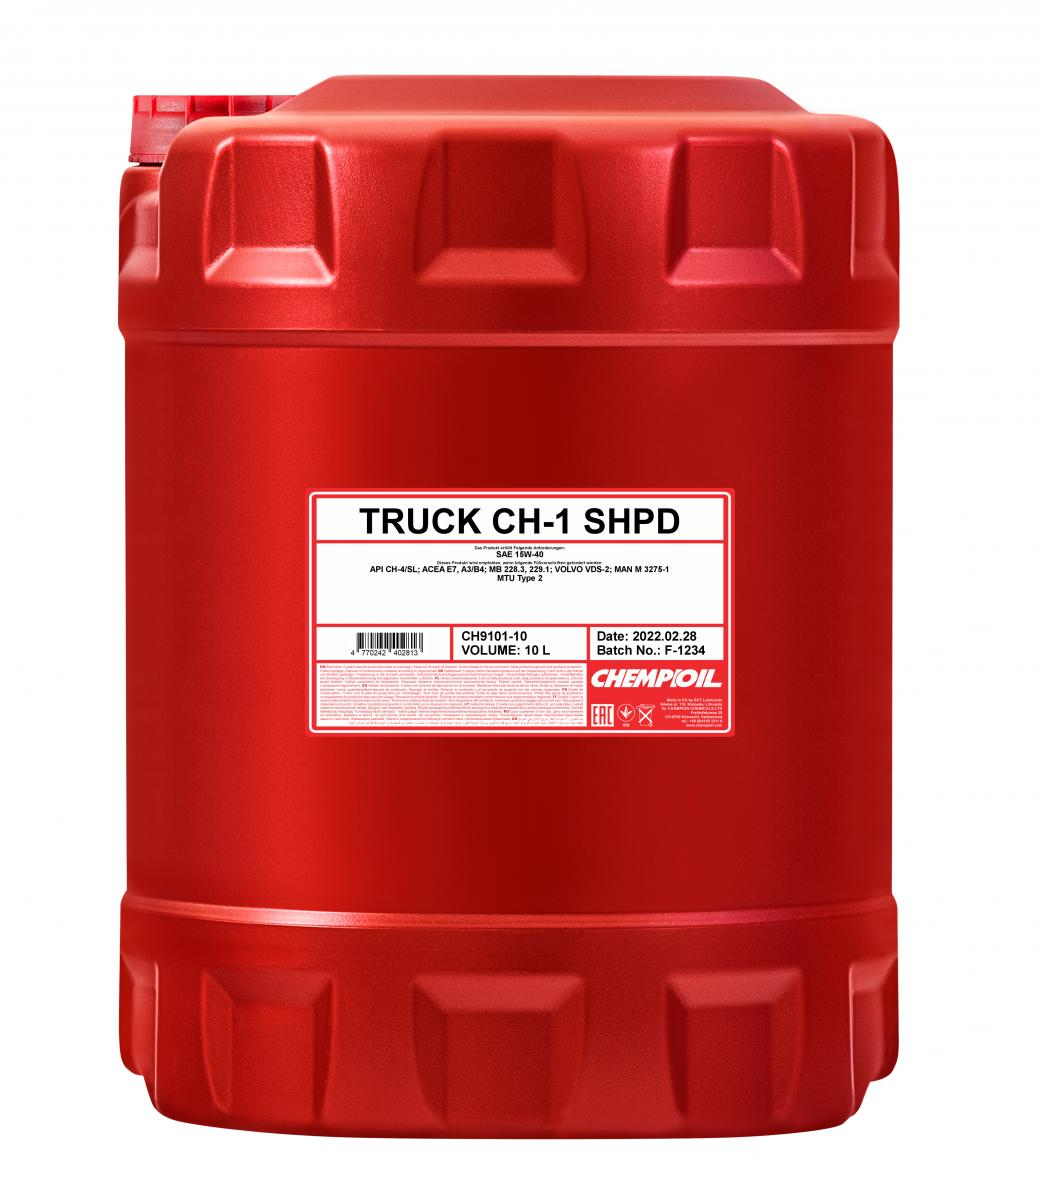 фото 15w-40 ch-1 truck shpd, ch-4/sl 20л (мин. мотор. масло) chempioil